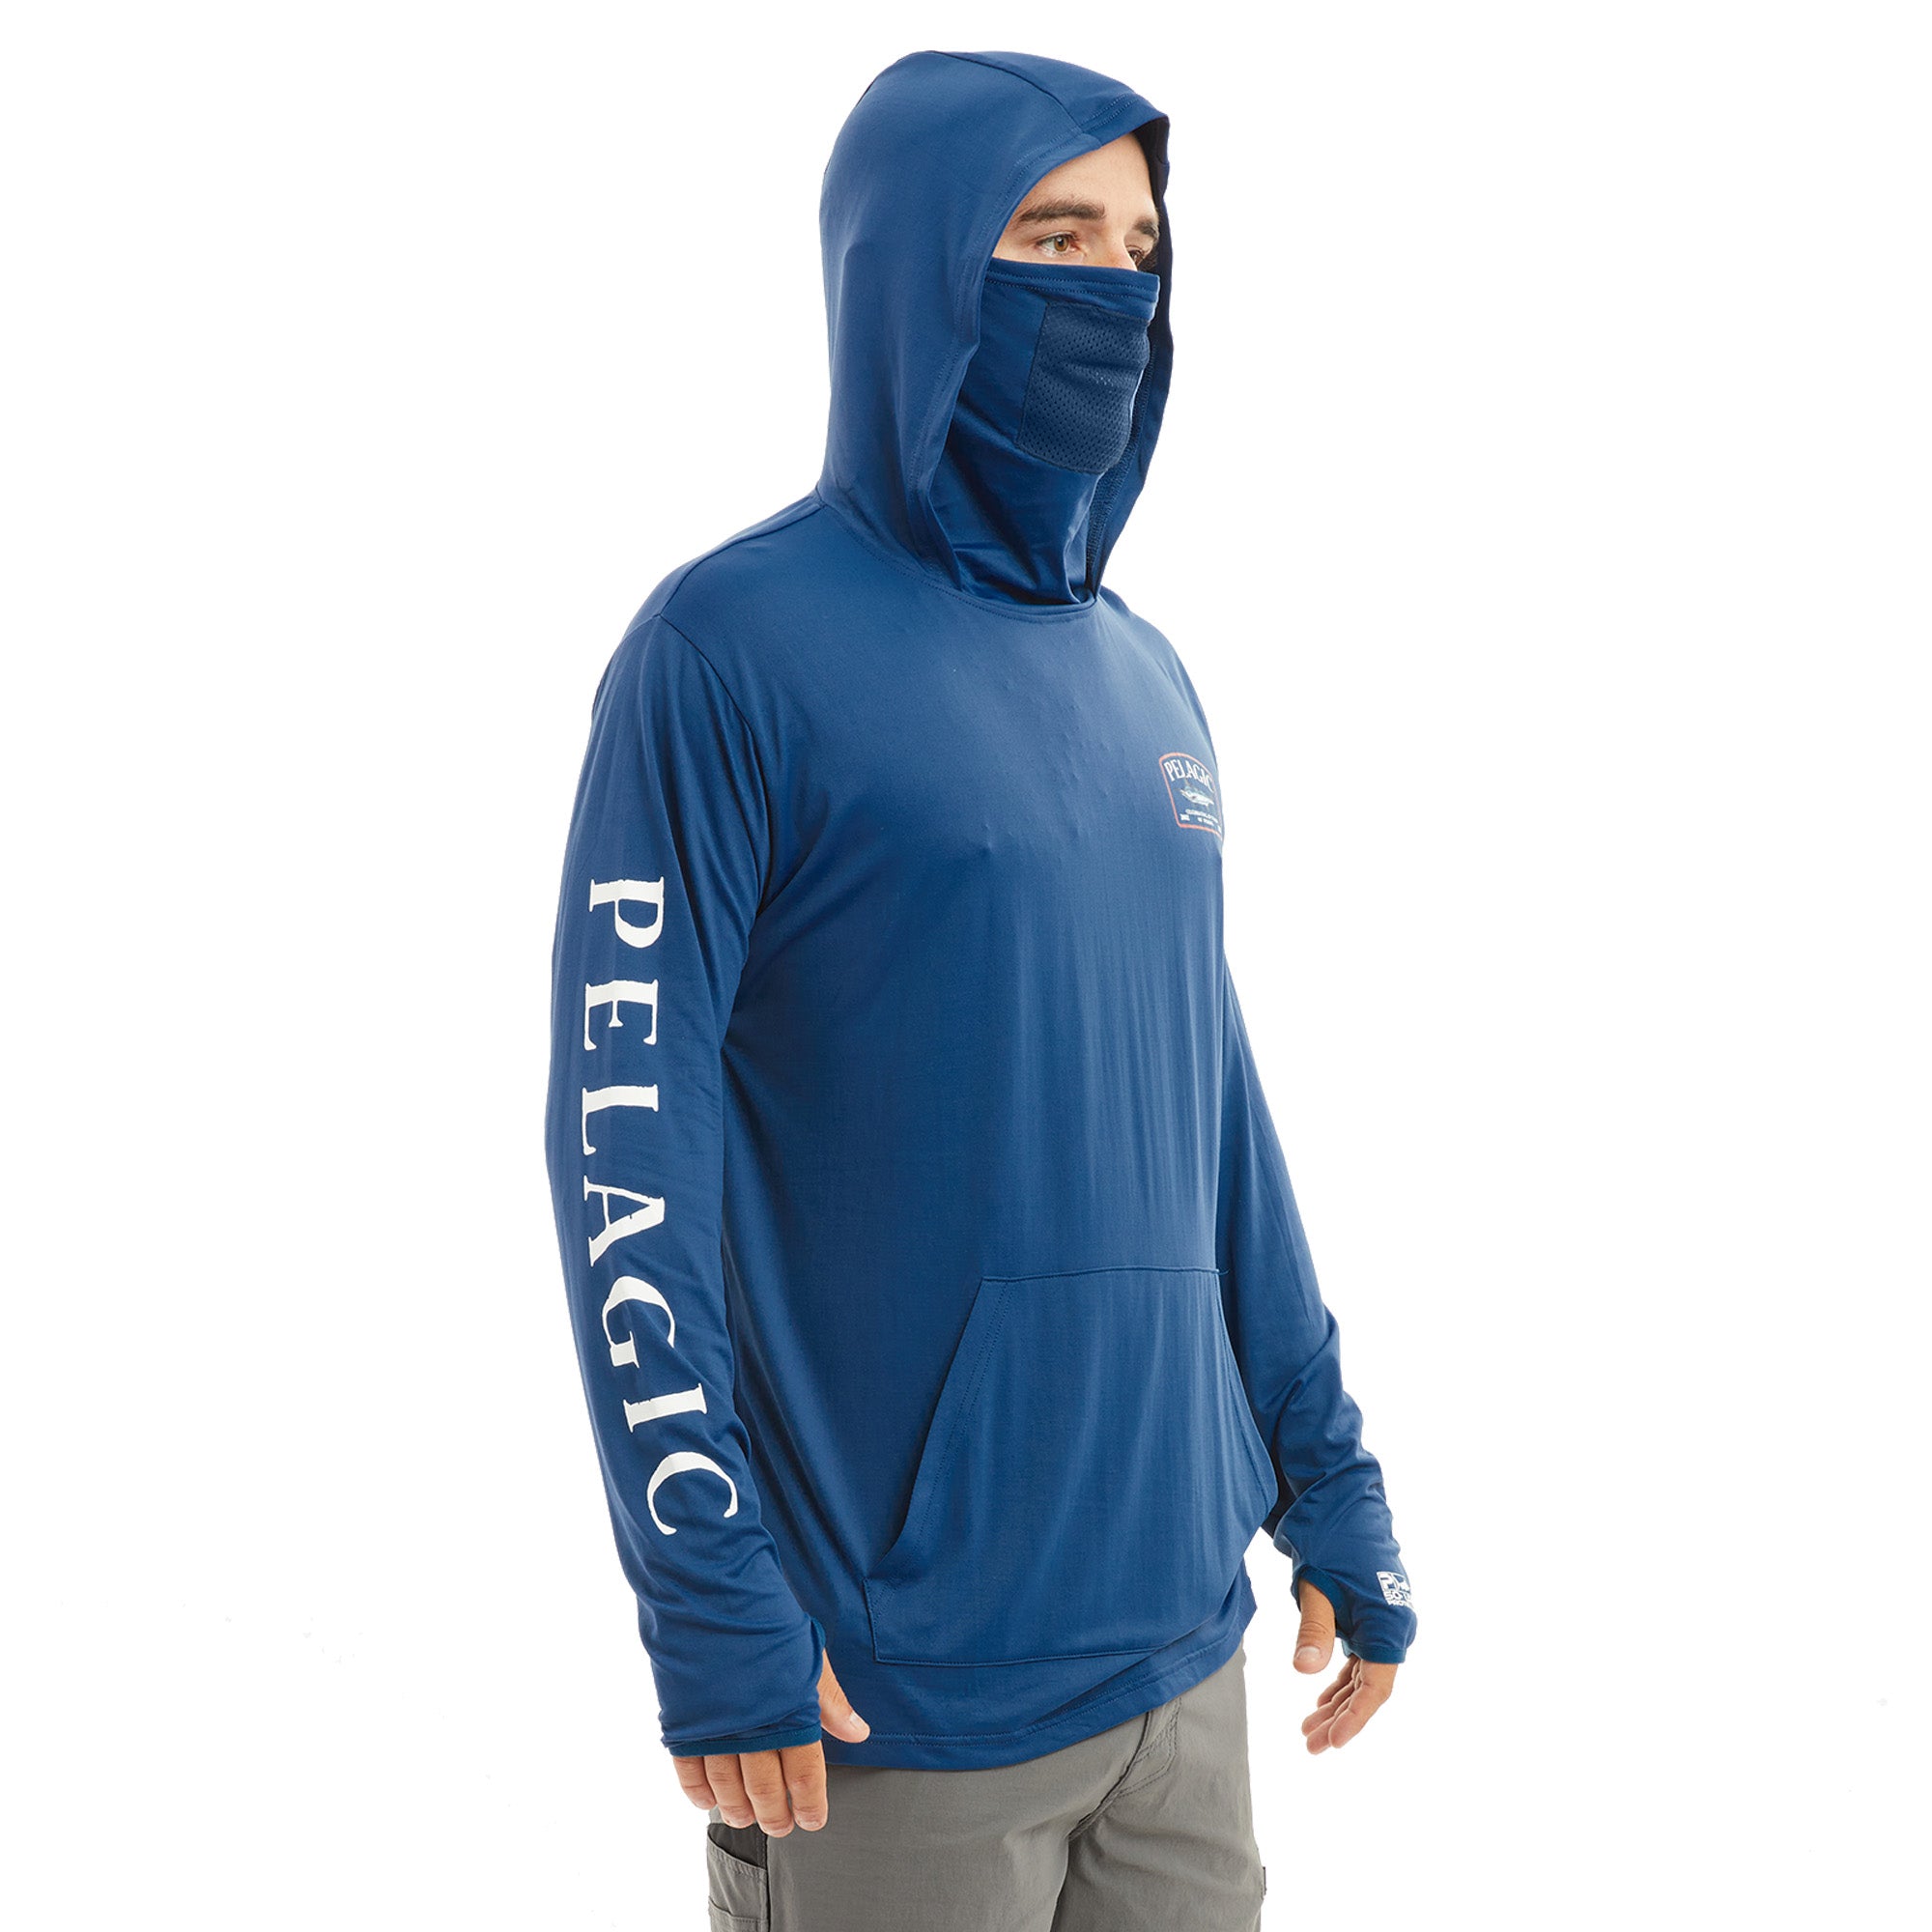 Pelagic Fishing Wear Men's Long Sleeve Fishing Hoodies Shirts